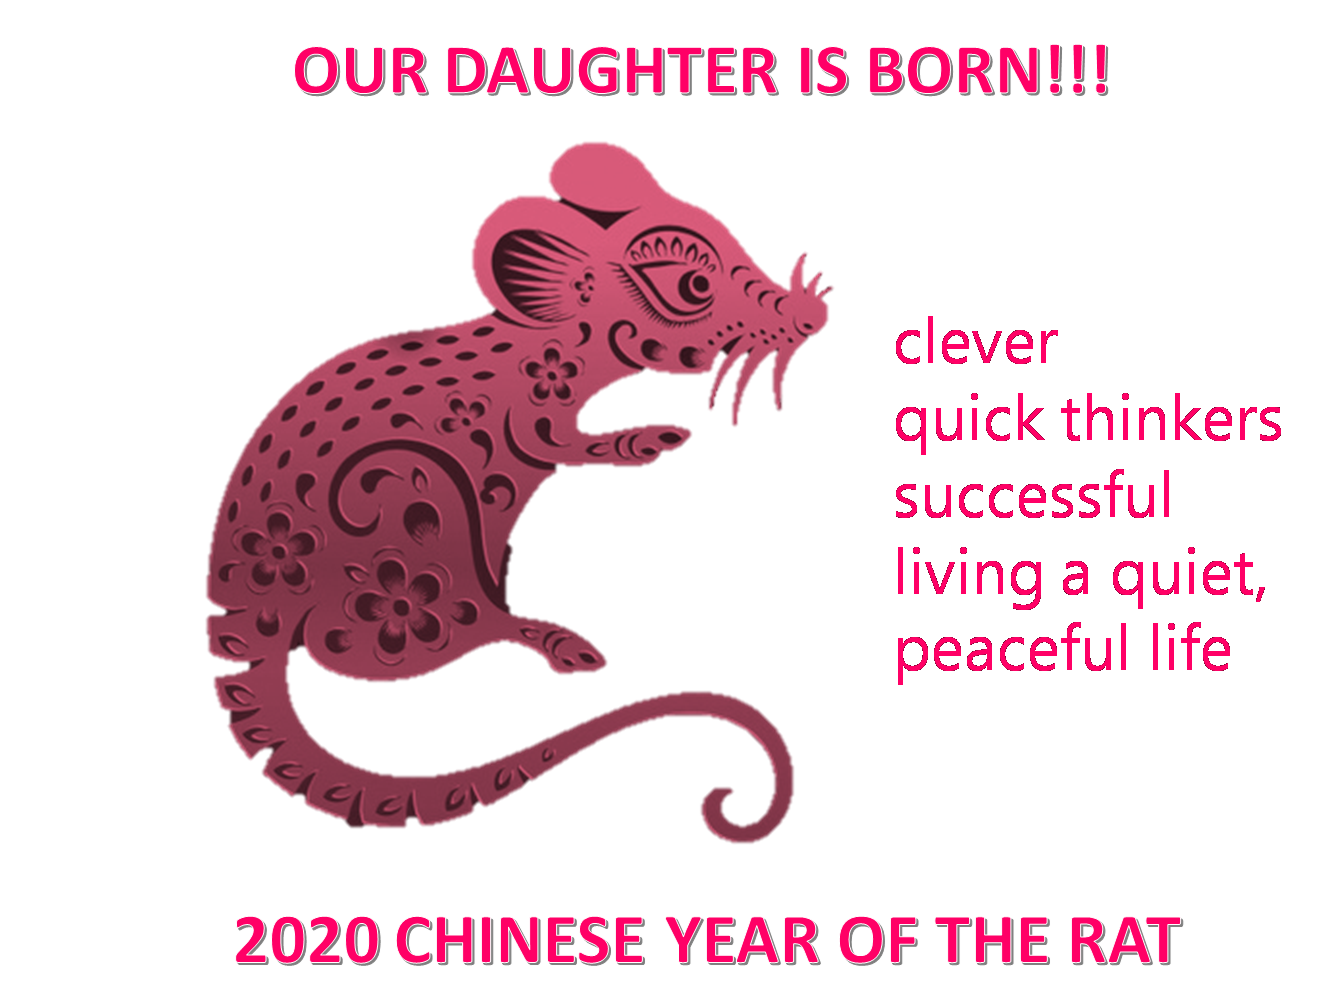 daughter is born 2020 poster plantilla imagen principal